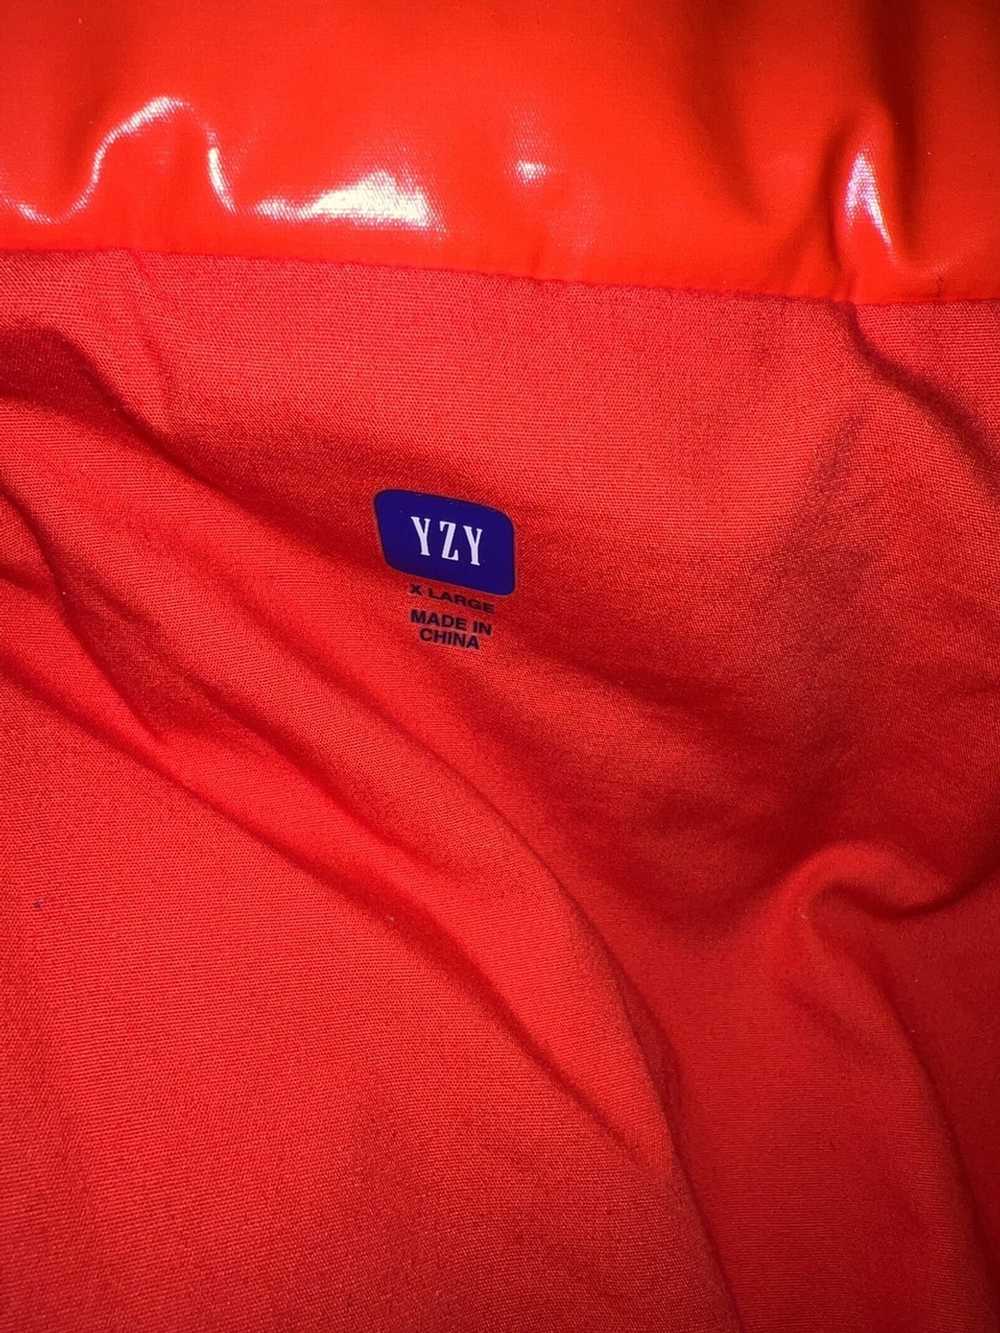 Gap × Kanye West Yeezy Gap Round Jacket Red (bare… - image 7